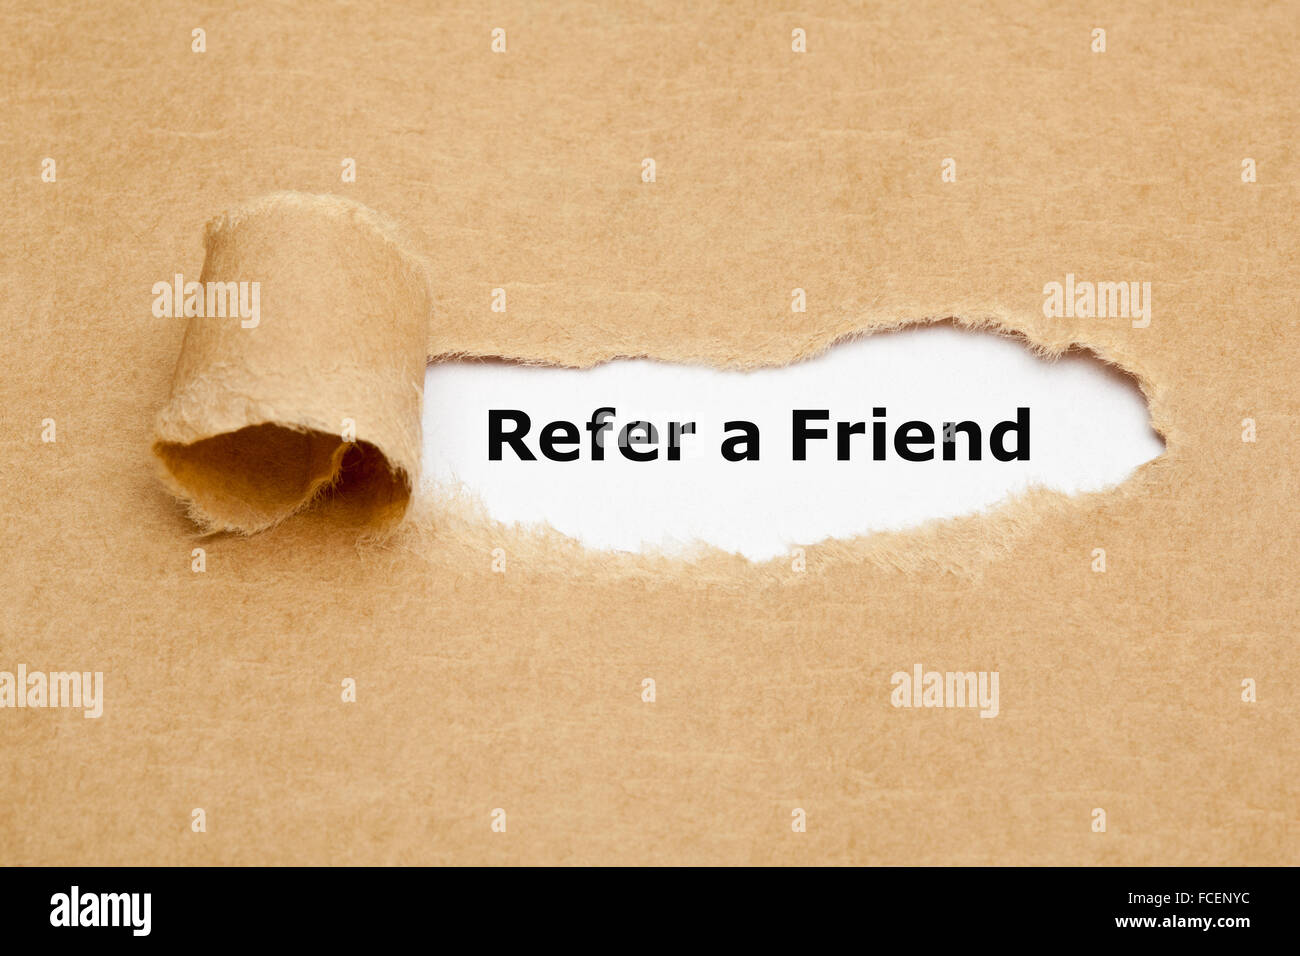 Der Text Refer a Friend erscheint hinter zerrissenes braunen Papier. Empfehlungs-marketing-Konzept. Stockfoto